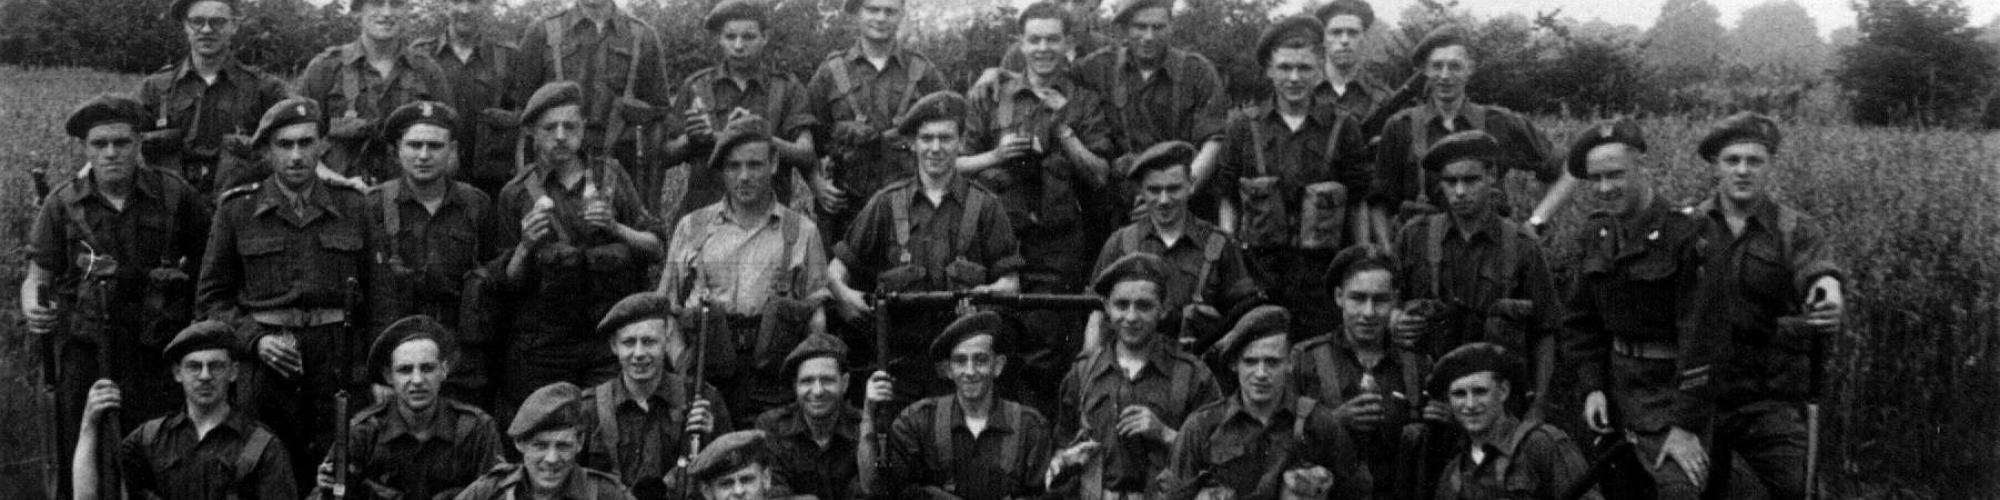 Volontaires belges durant la Guerre de Corée : 1950-1953, photo n°15202 (Collection Louis Verdijck.Dans le bataillon des volontaires de Corée), Droits réservés Cegesoma/Archives de l'Etat.